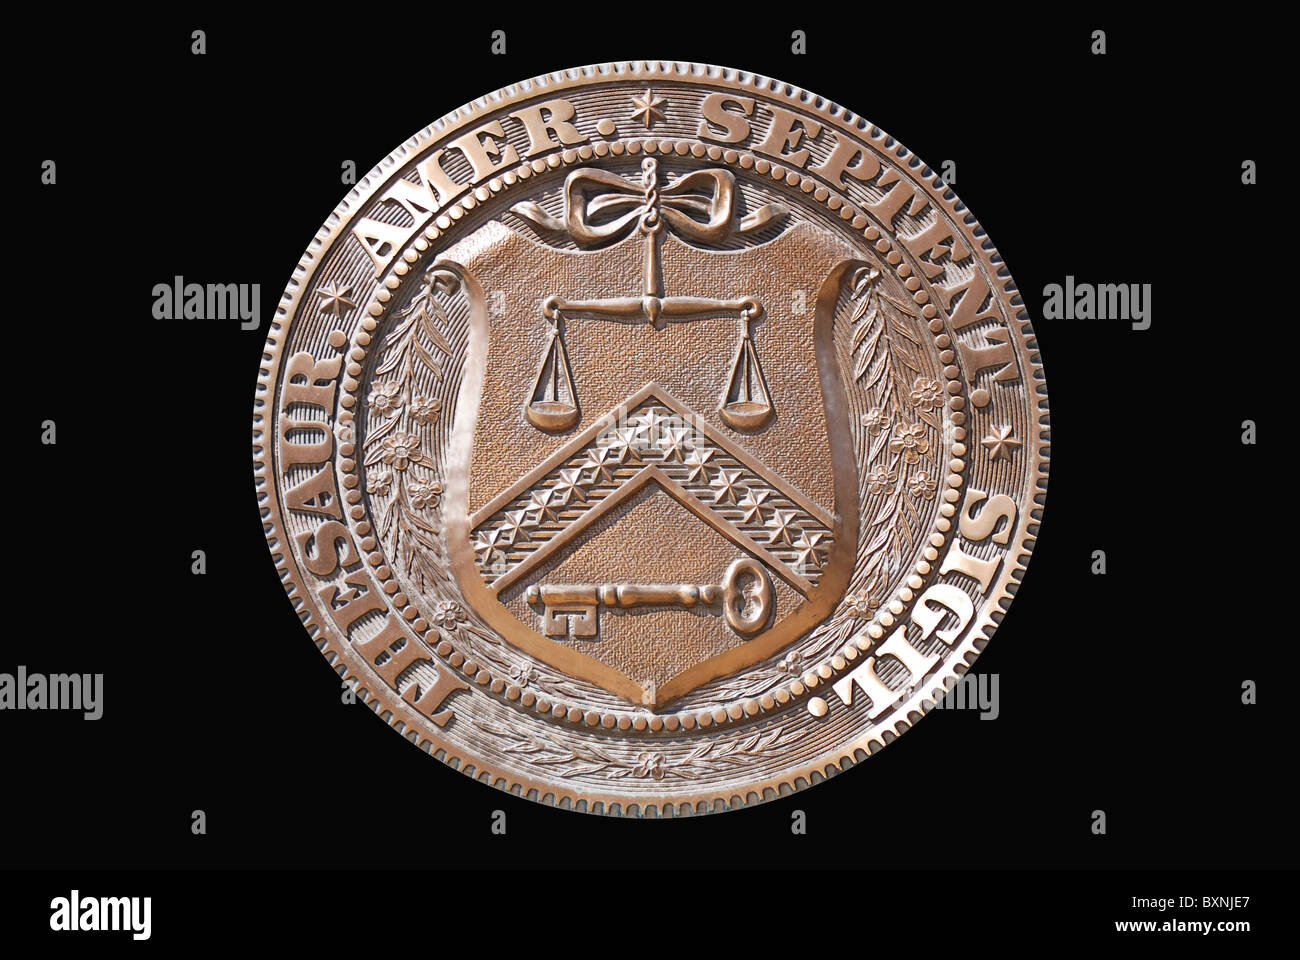 Isolierte Logo Stempel von Washington DC United States Treasury Department mit schwarzem Hintergrund Stockfoto